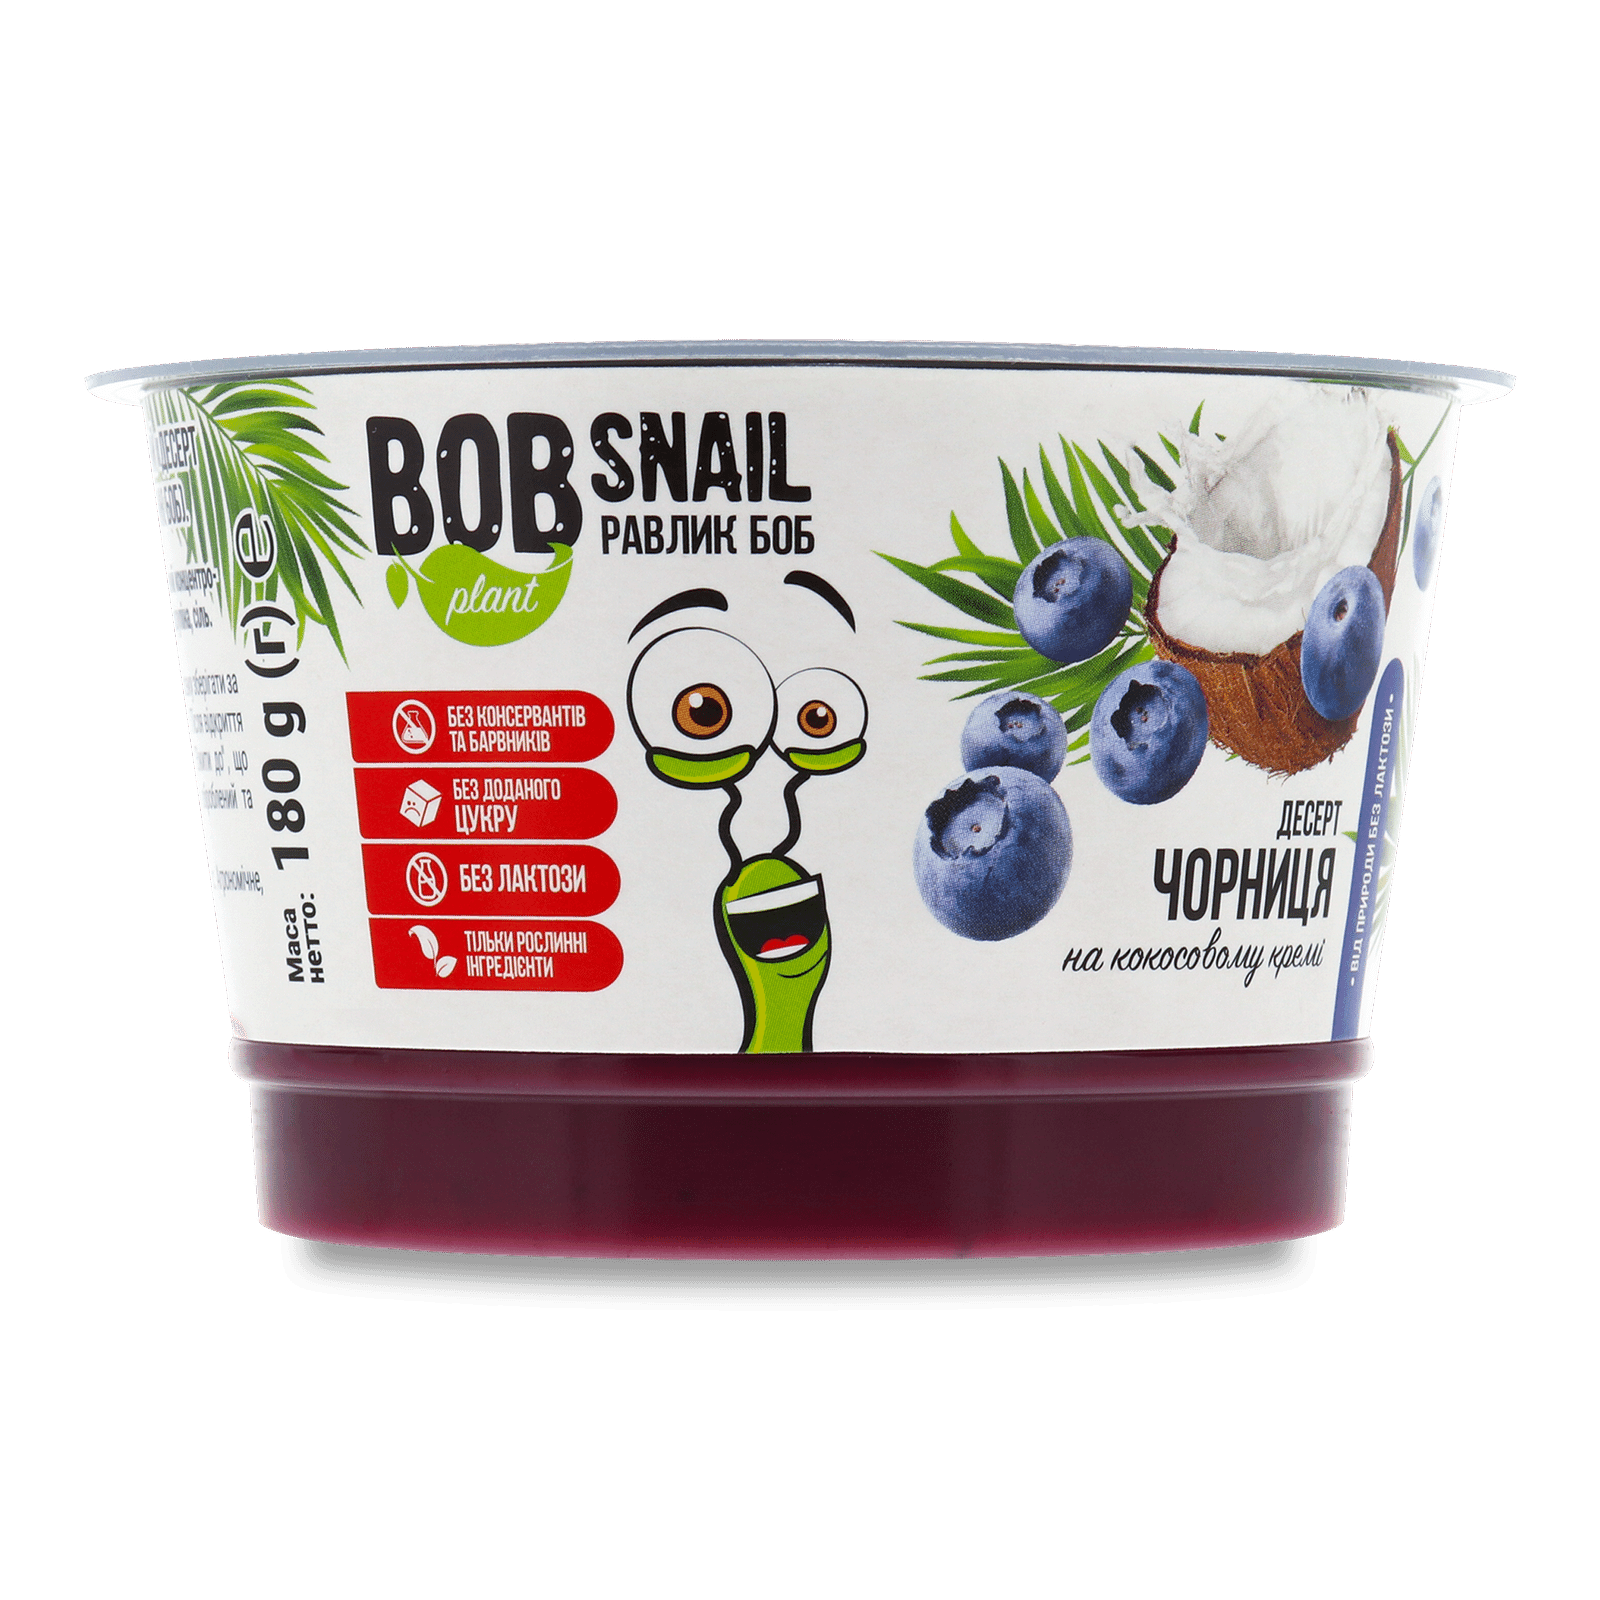 Десерт Bob Snail чорниця на кокосовому кремі - 1